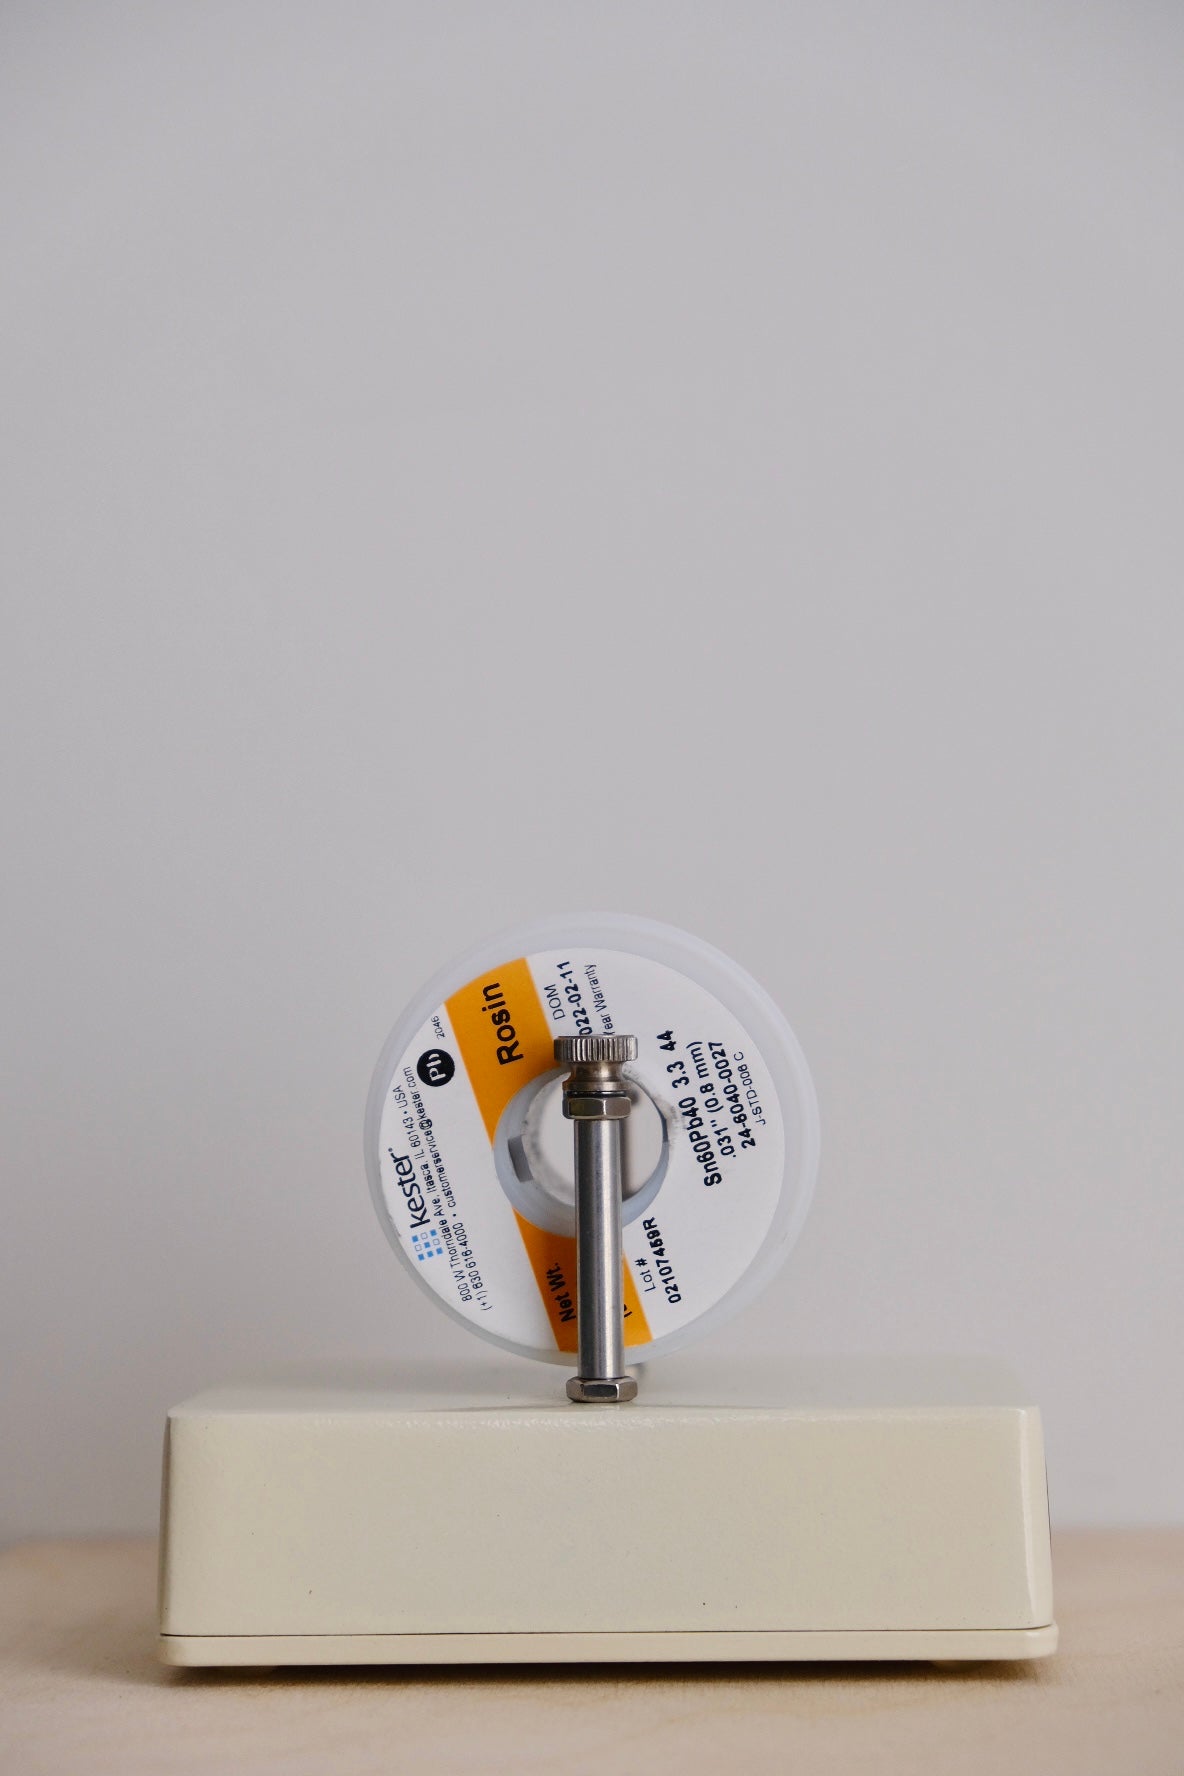 Coppersound DIY Solder Dispenser in Cream